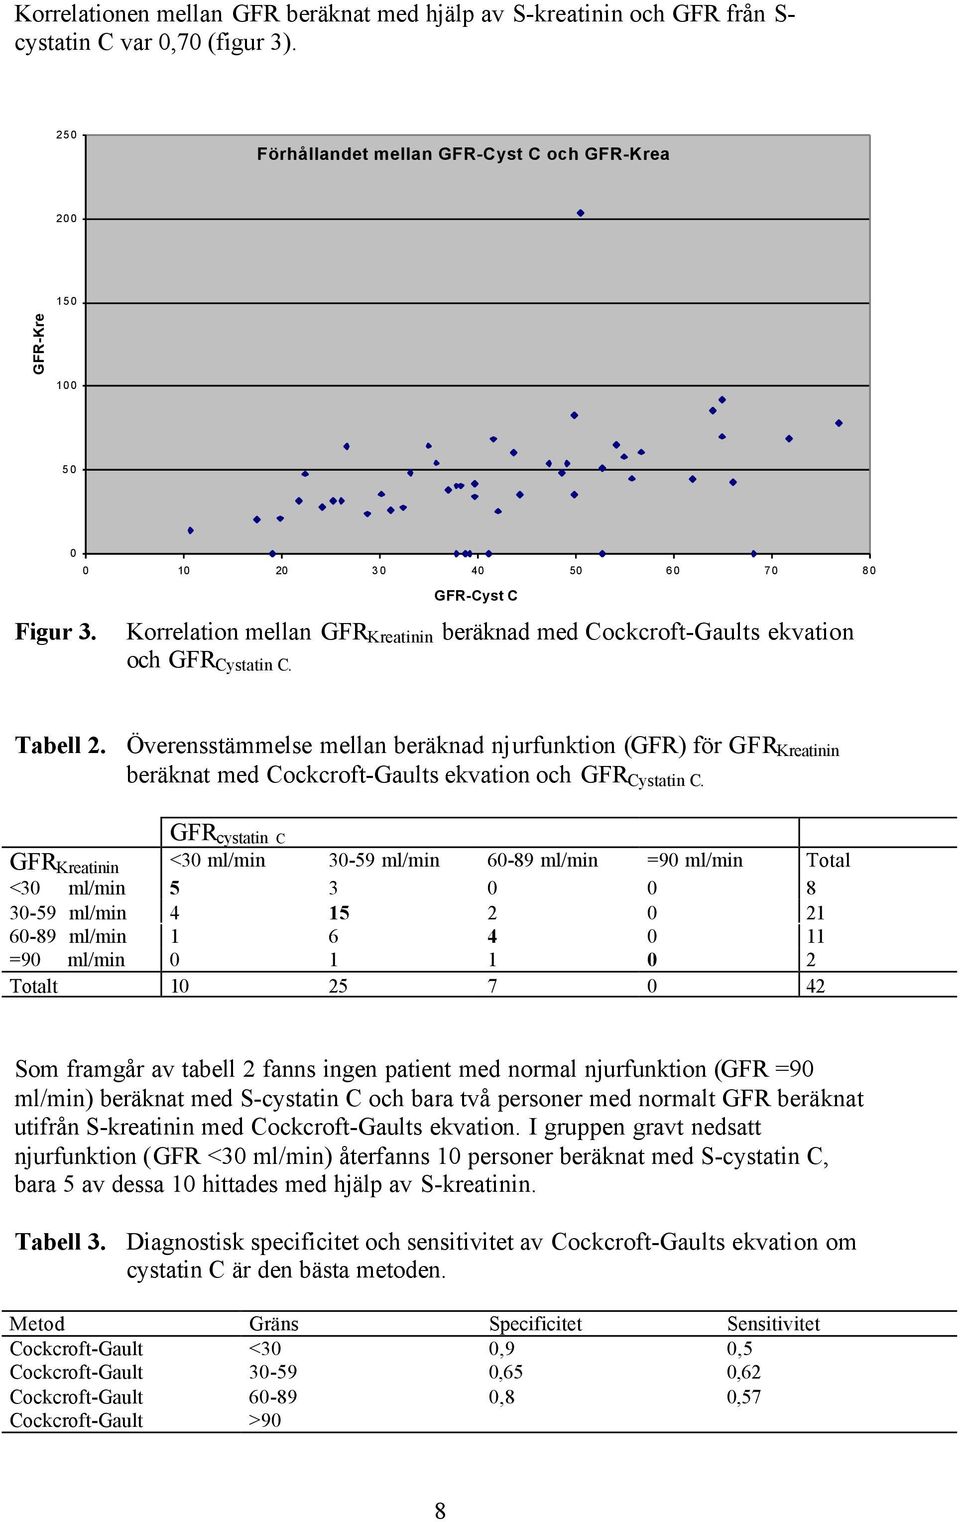 Överensstämmelse mellan beräknad njurfunktion (GFR) för GFR Kreatinin beräknat med Cockcroft-Gaults ekvation och GFR Cystatin C.